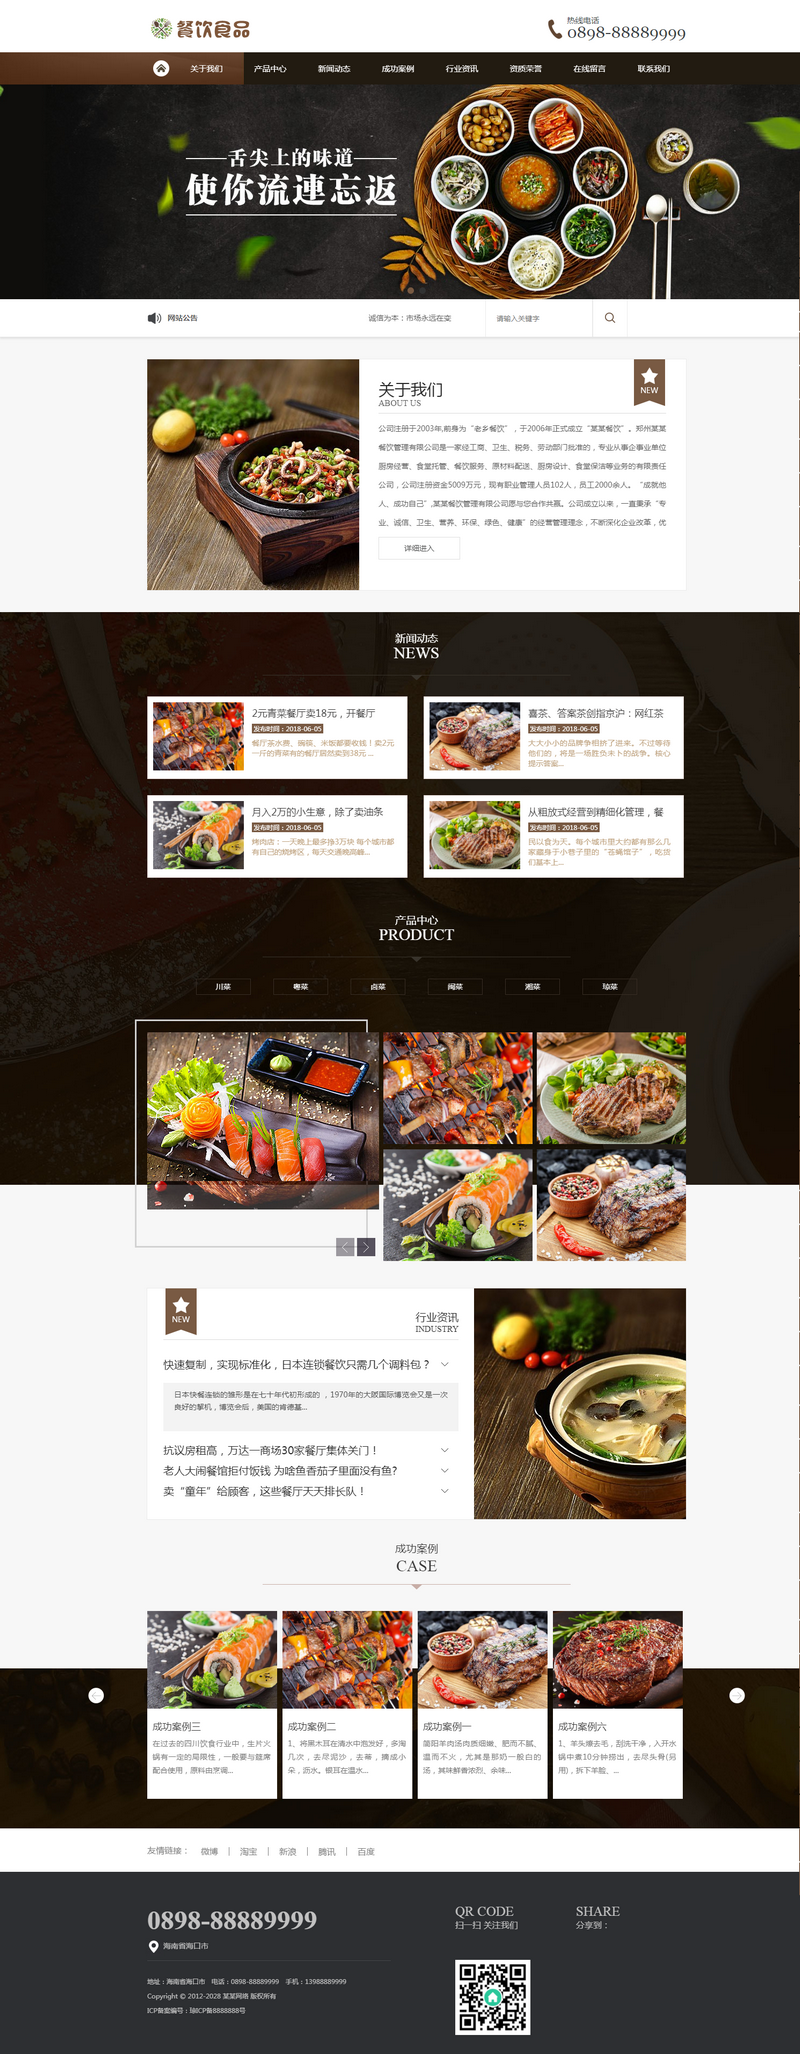 M889 易优CMS模板餐饮食品川菜类网站 餐饮食品类企业网站源码